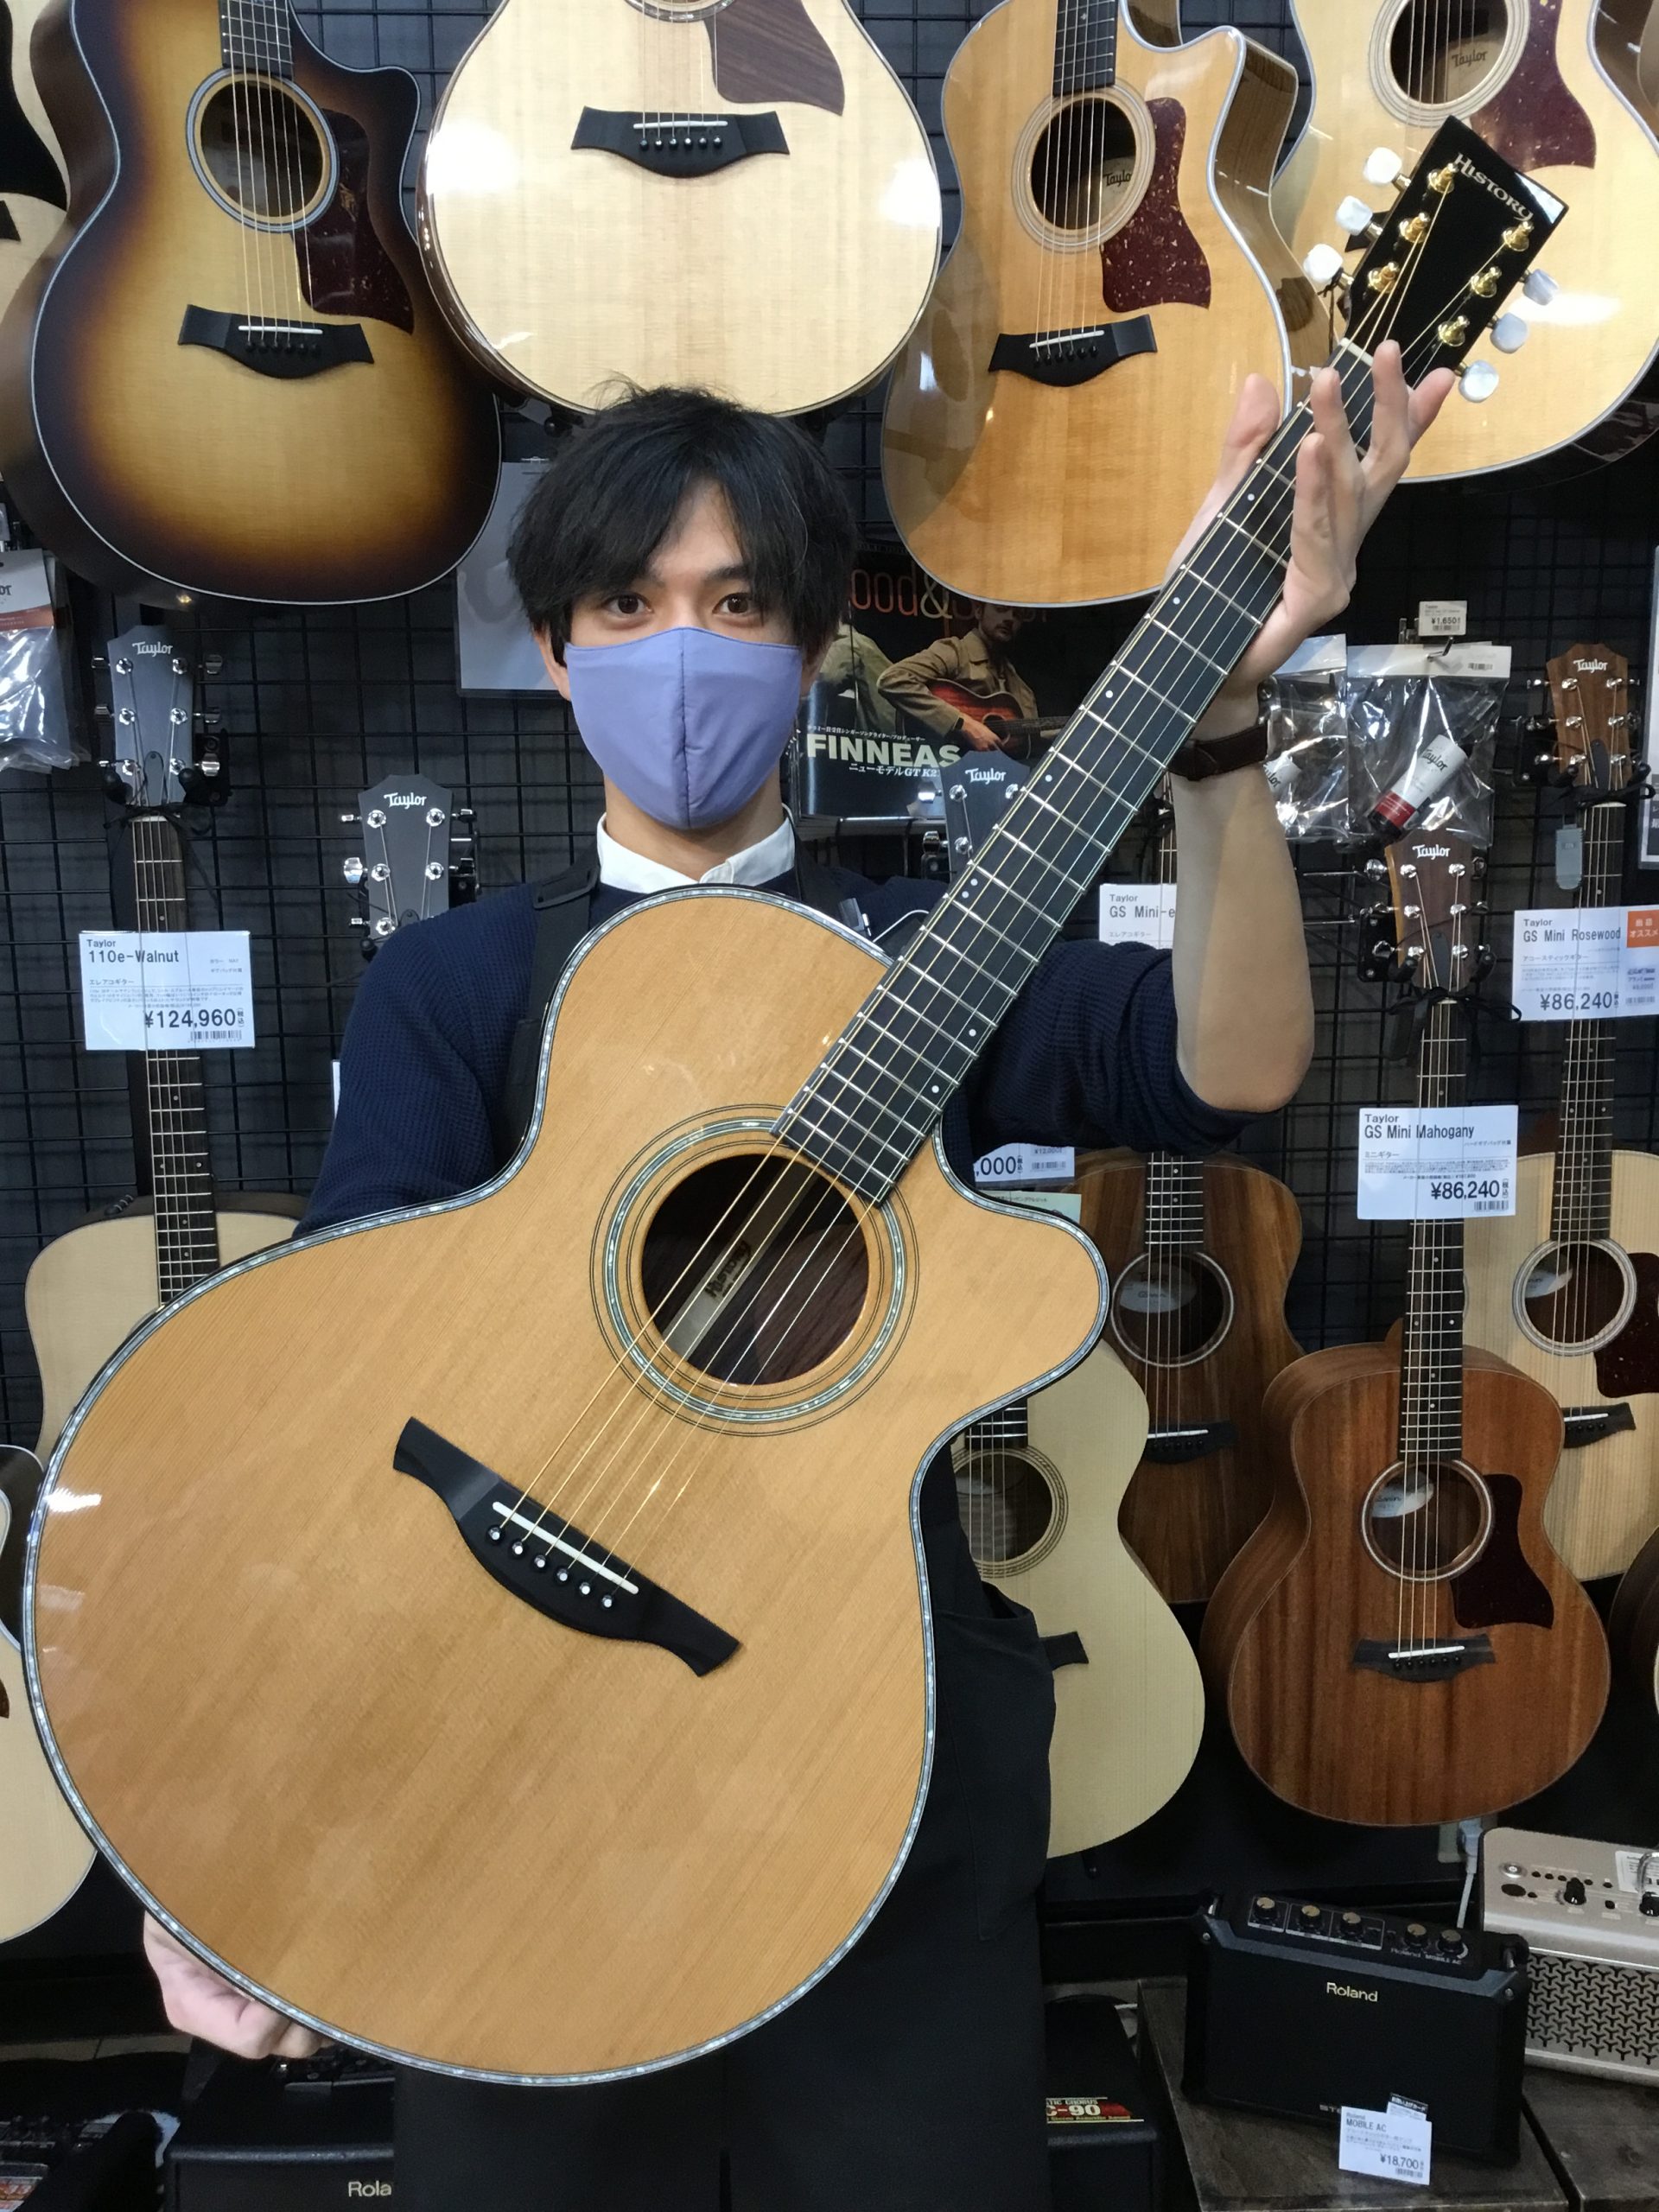 アコースティックギター9月入荷情報(29日更新)